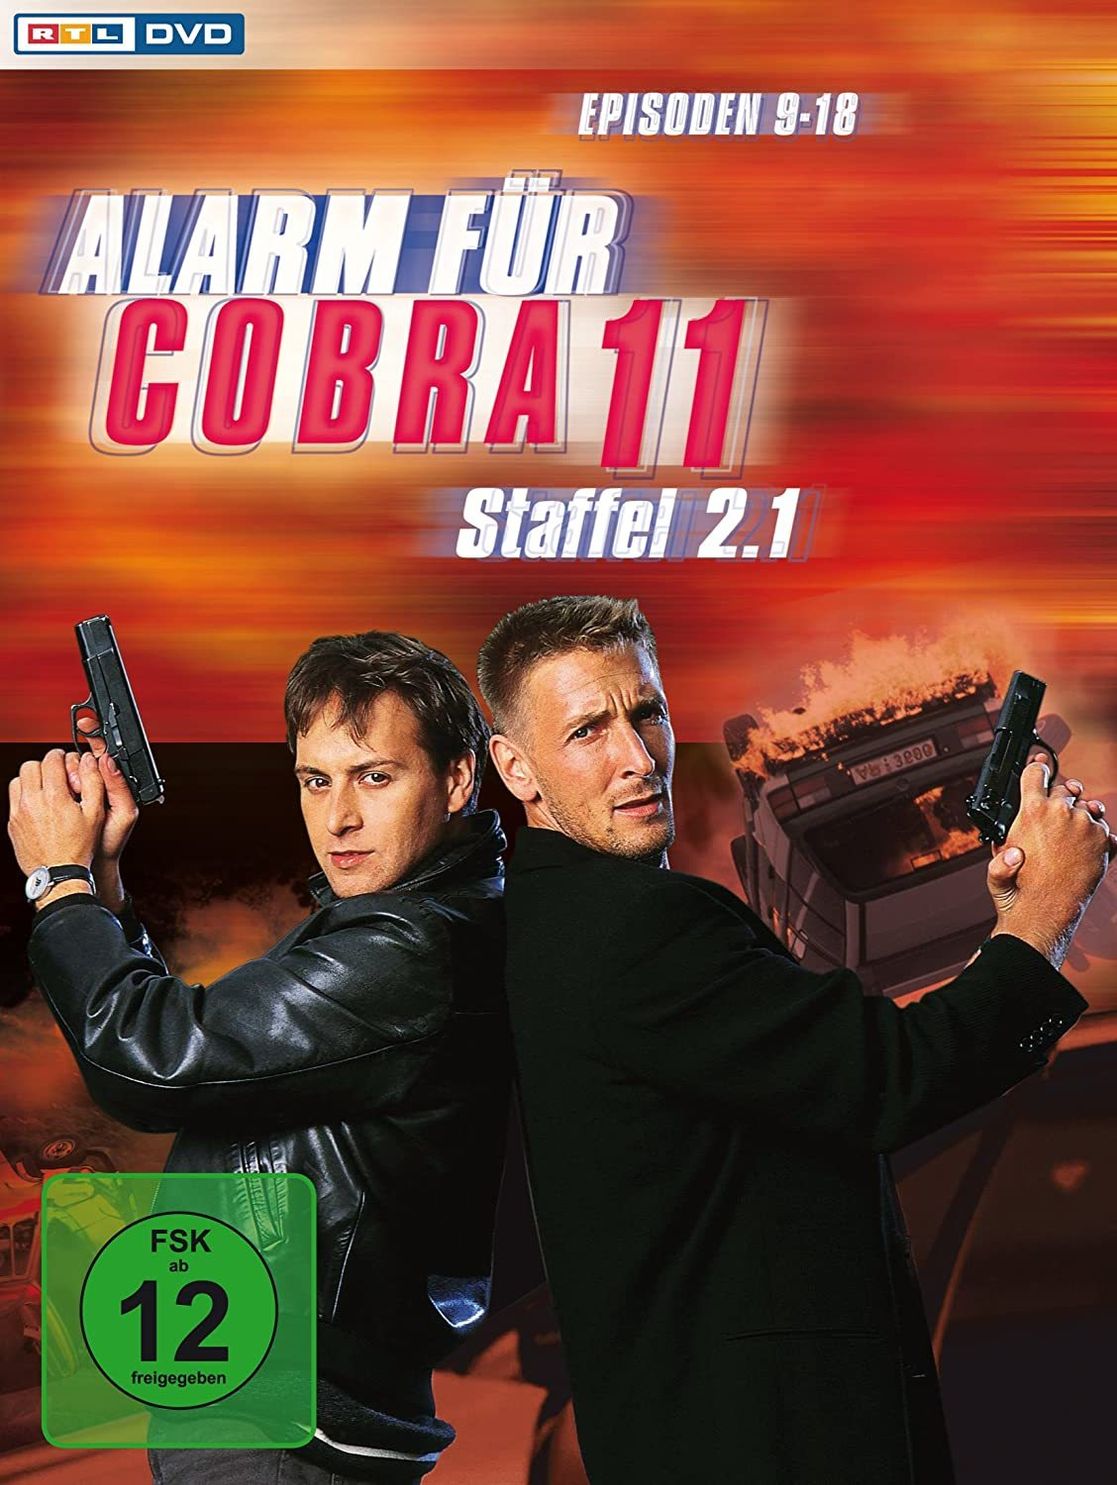 Alarm für Cobra 11 - Staffel 2.1 DVD bei Weltbild.de bestellen